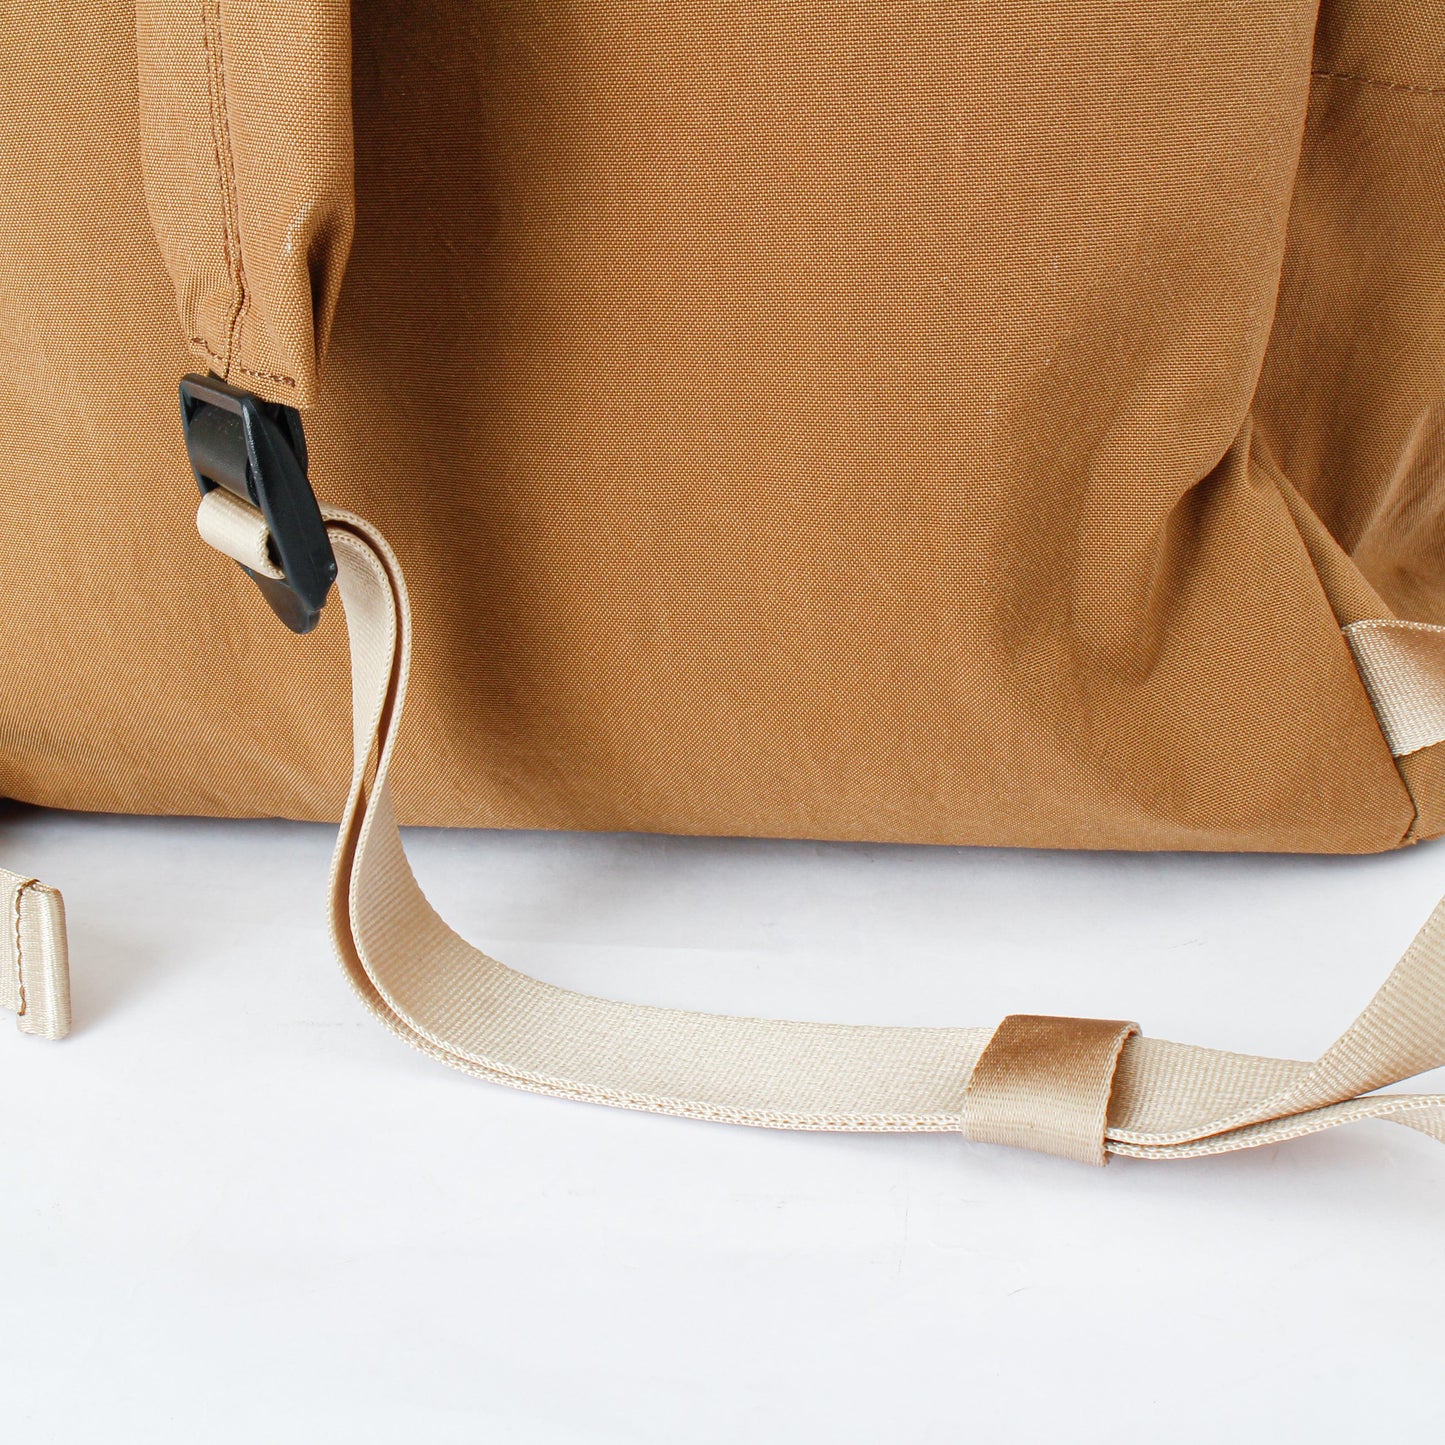 multi pocket suspension backpack / camel